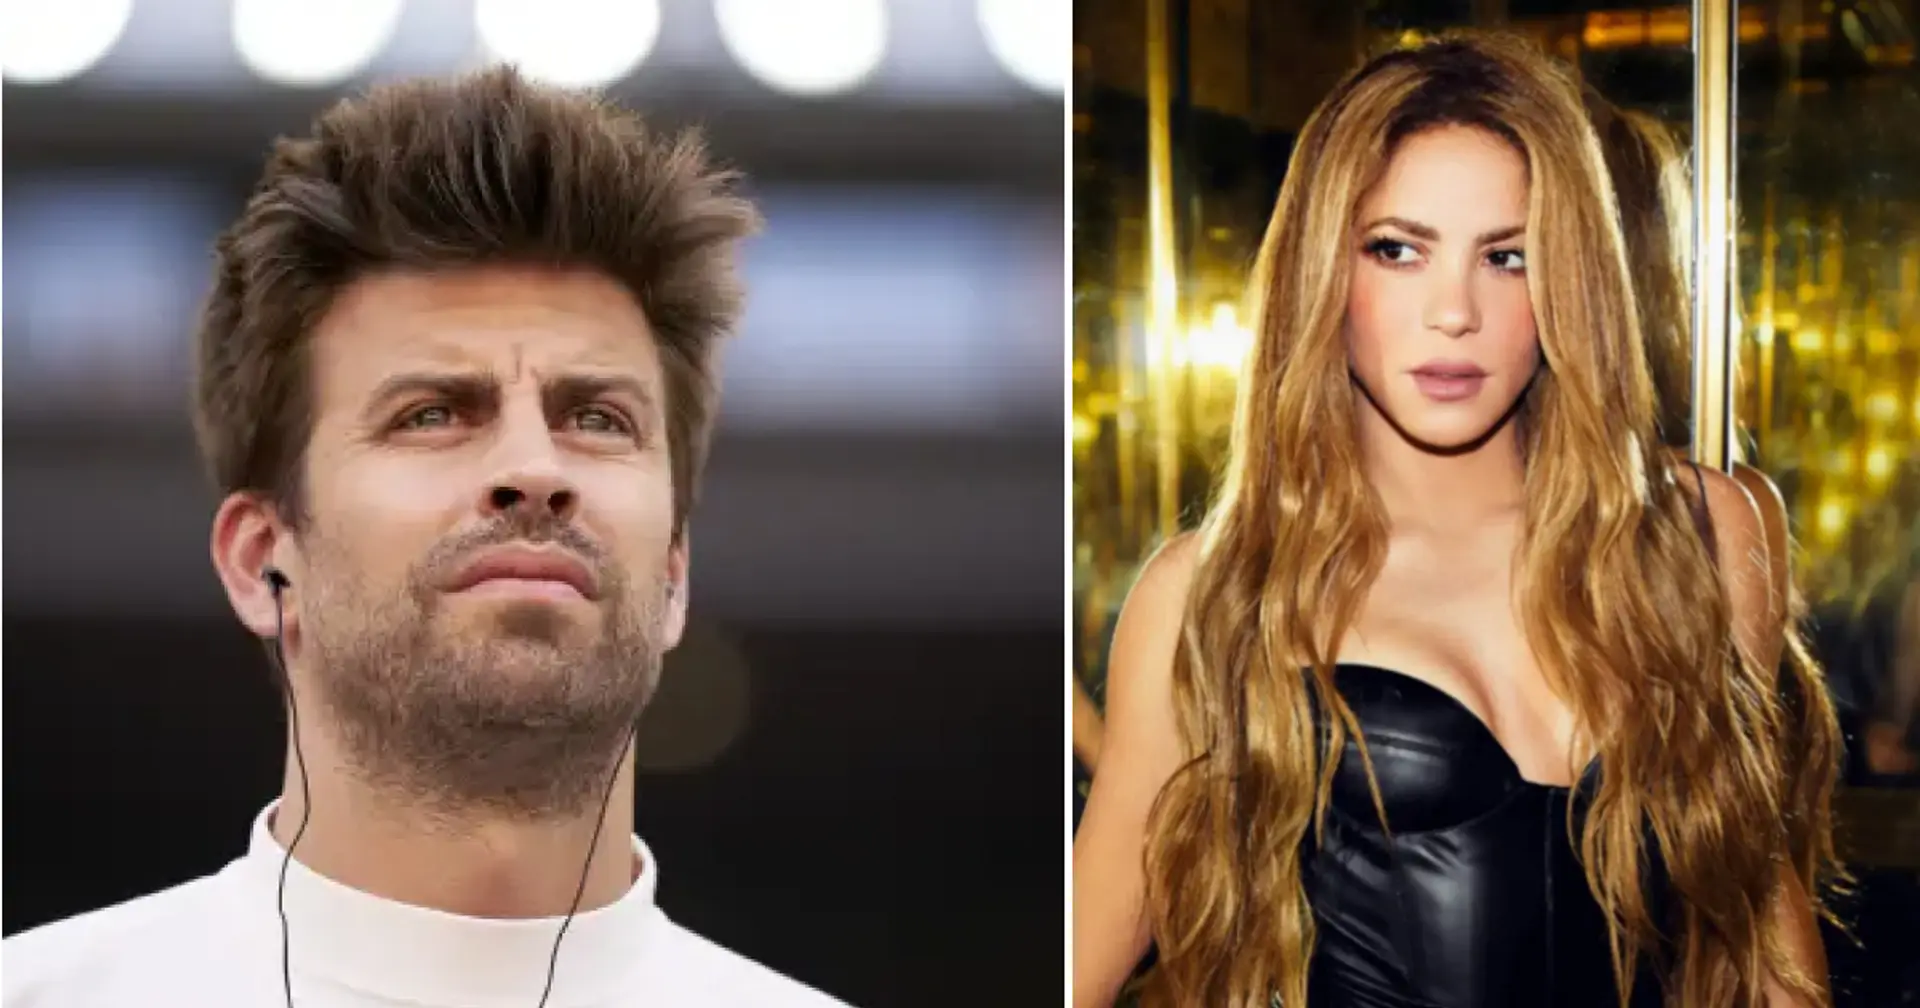 Shakira über ihre Trennung von Pique: "In gewisser Weise ist es gut, dass ich keinen Ehemann habe. Jetzt will ich arbeiten und Songs schreiben"